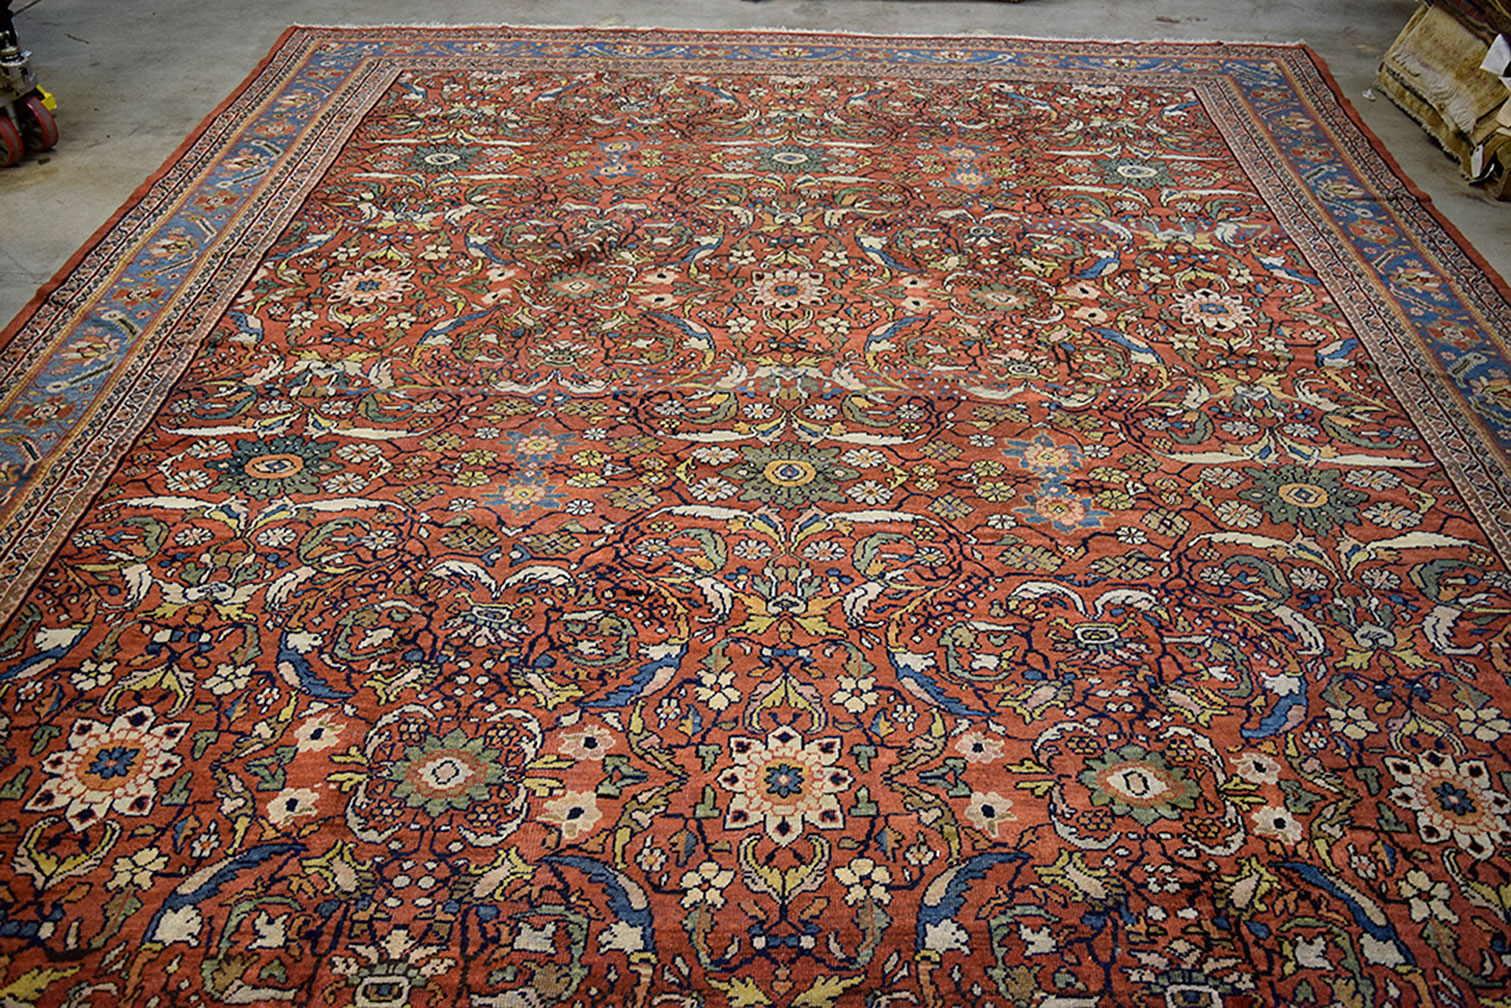 Antique mahal Carpet - # 52473